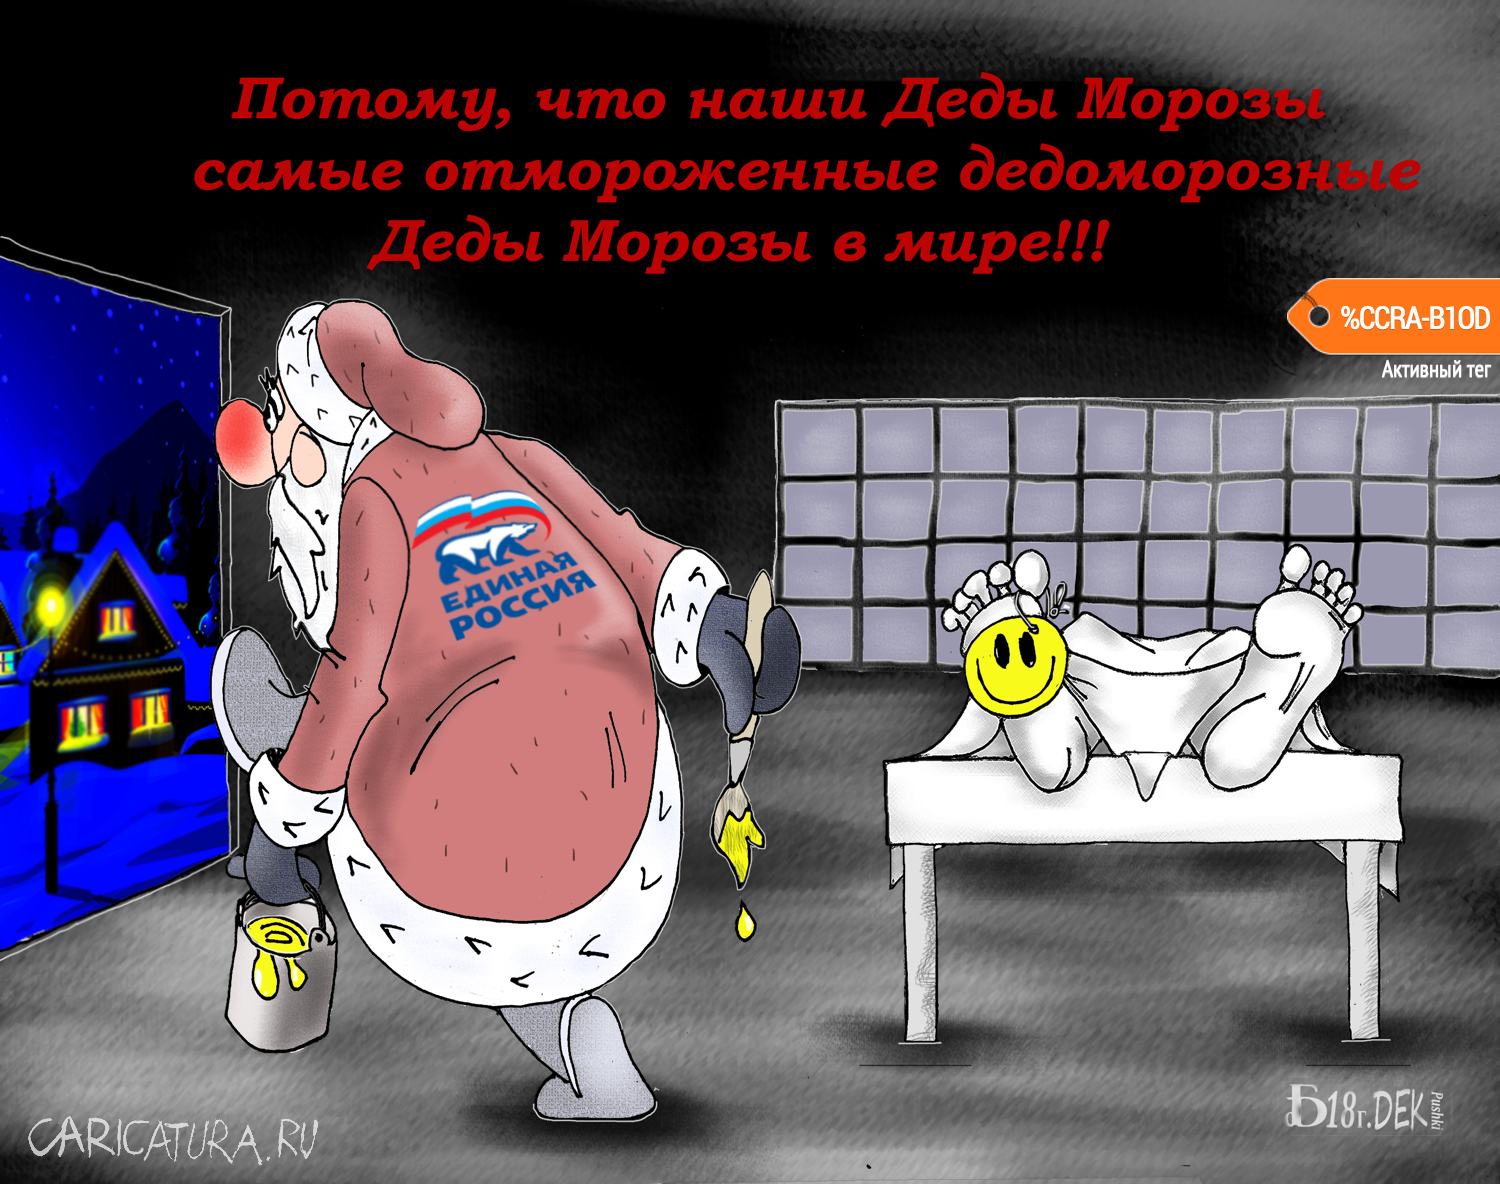 Карикатура "Разукрасил", Борис Демин